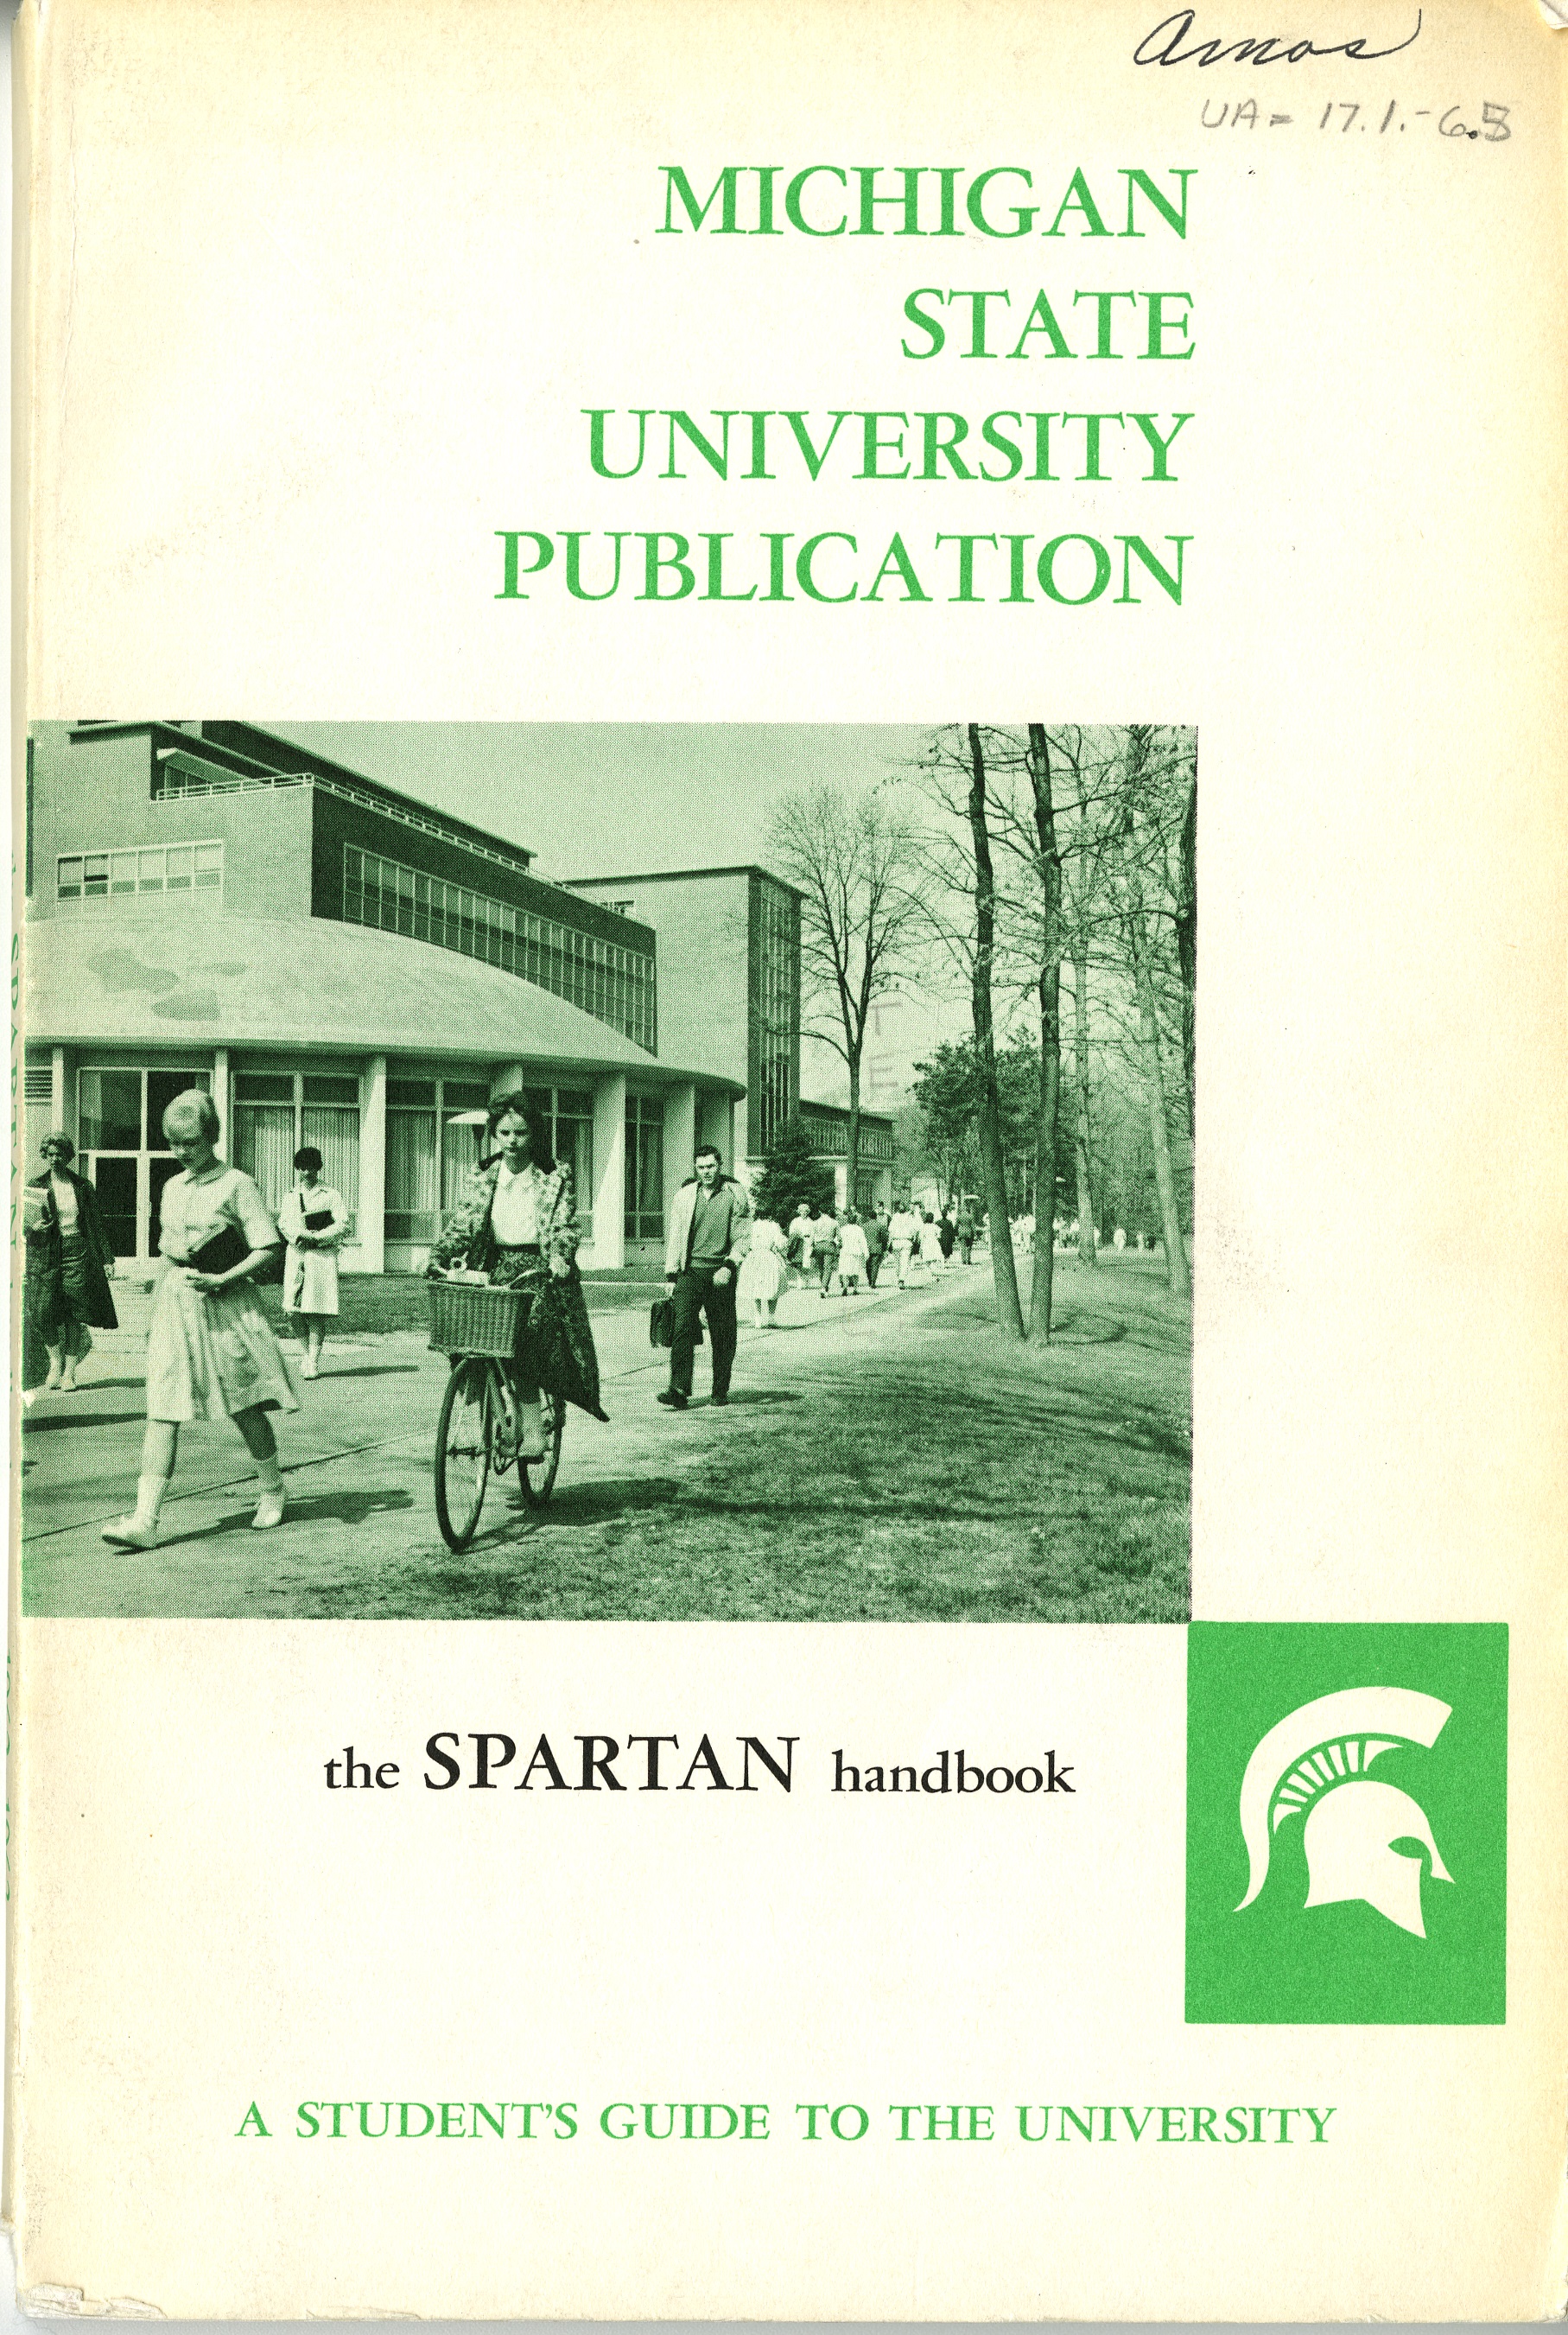 Student Handbook, 1962